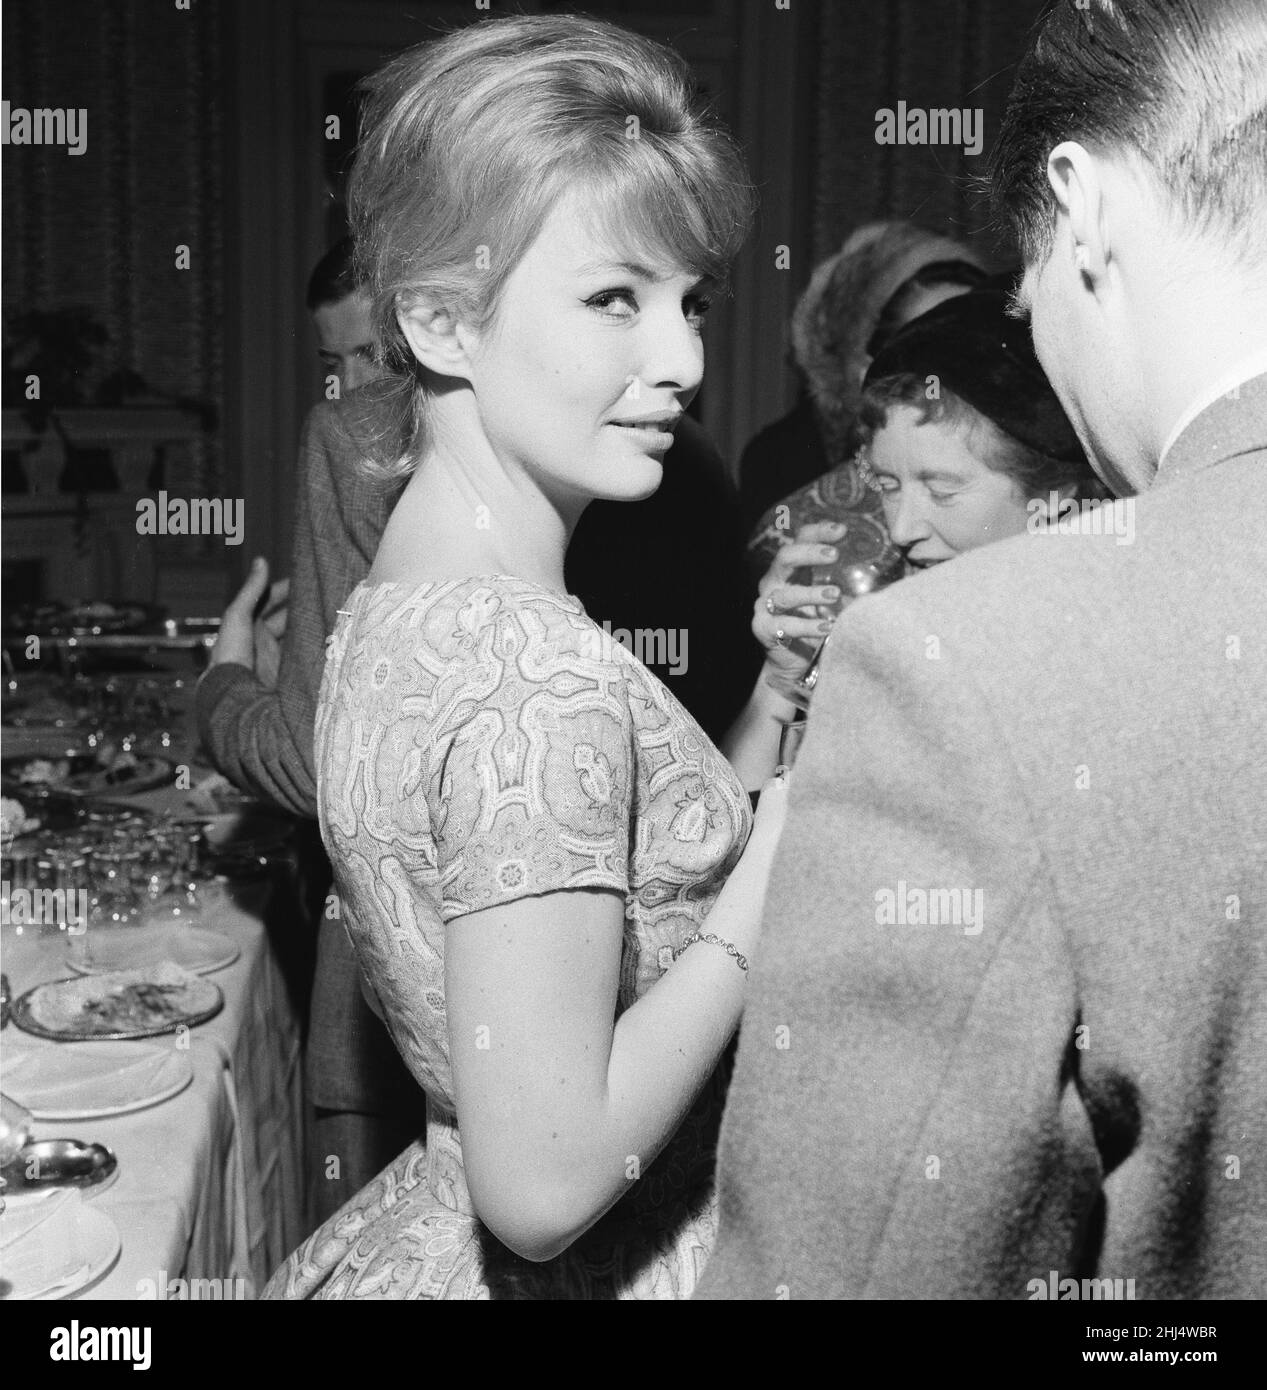 Annette Stroyberg, attrice danese, a Londra, domenica 14th dicembre 1958. Annette è nel Regno Unito per un test su schermo, lei spera di un ruolo nel nuovo film The Guns of Navarone. Foto Stock